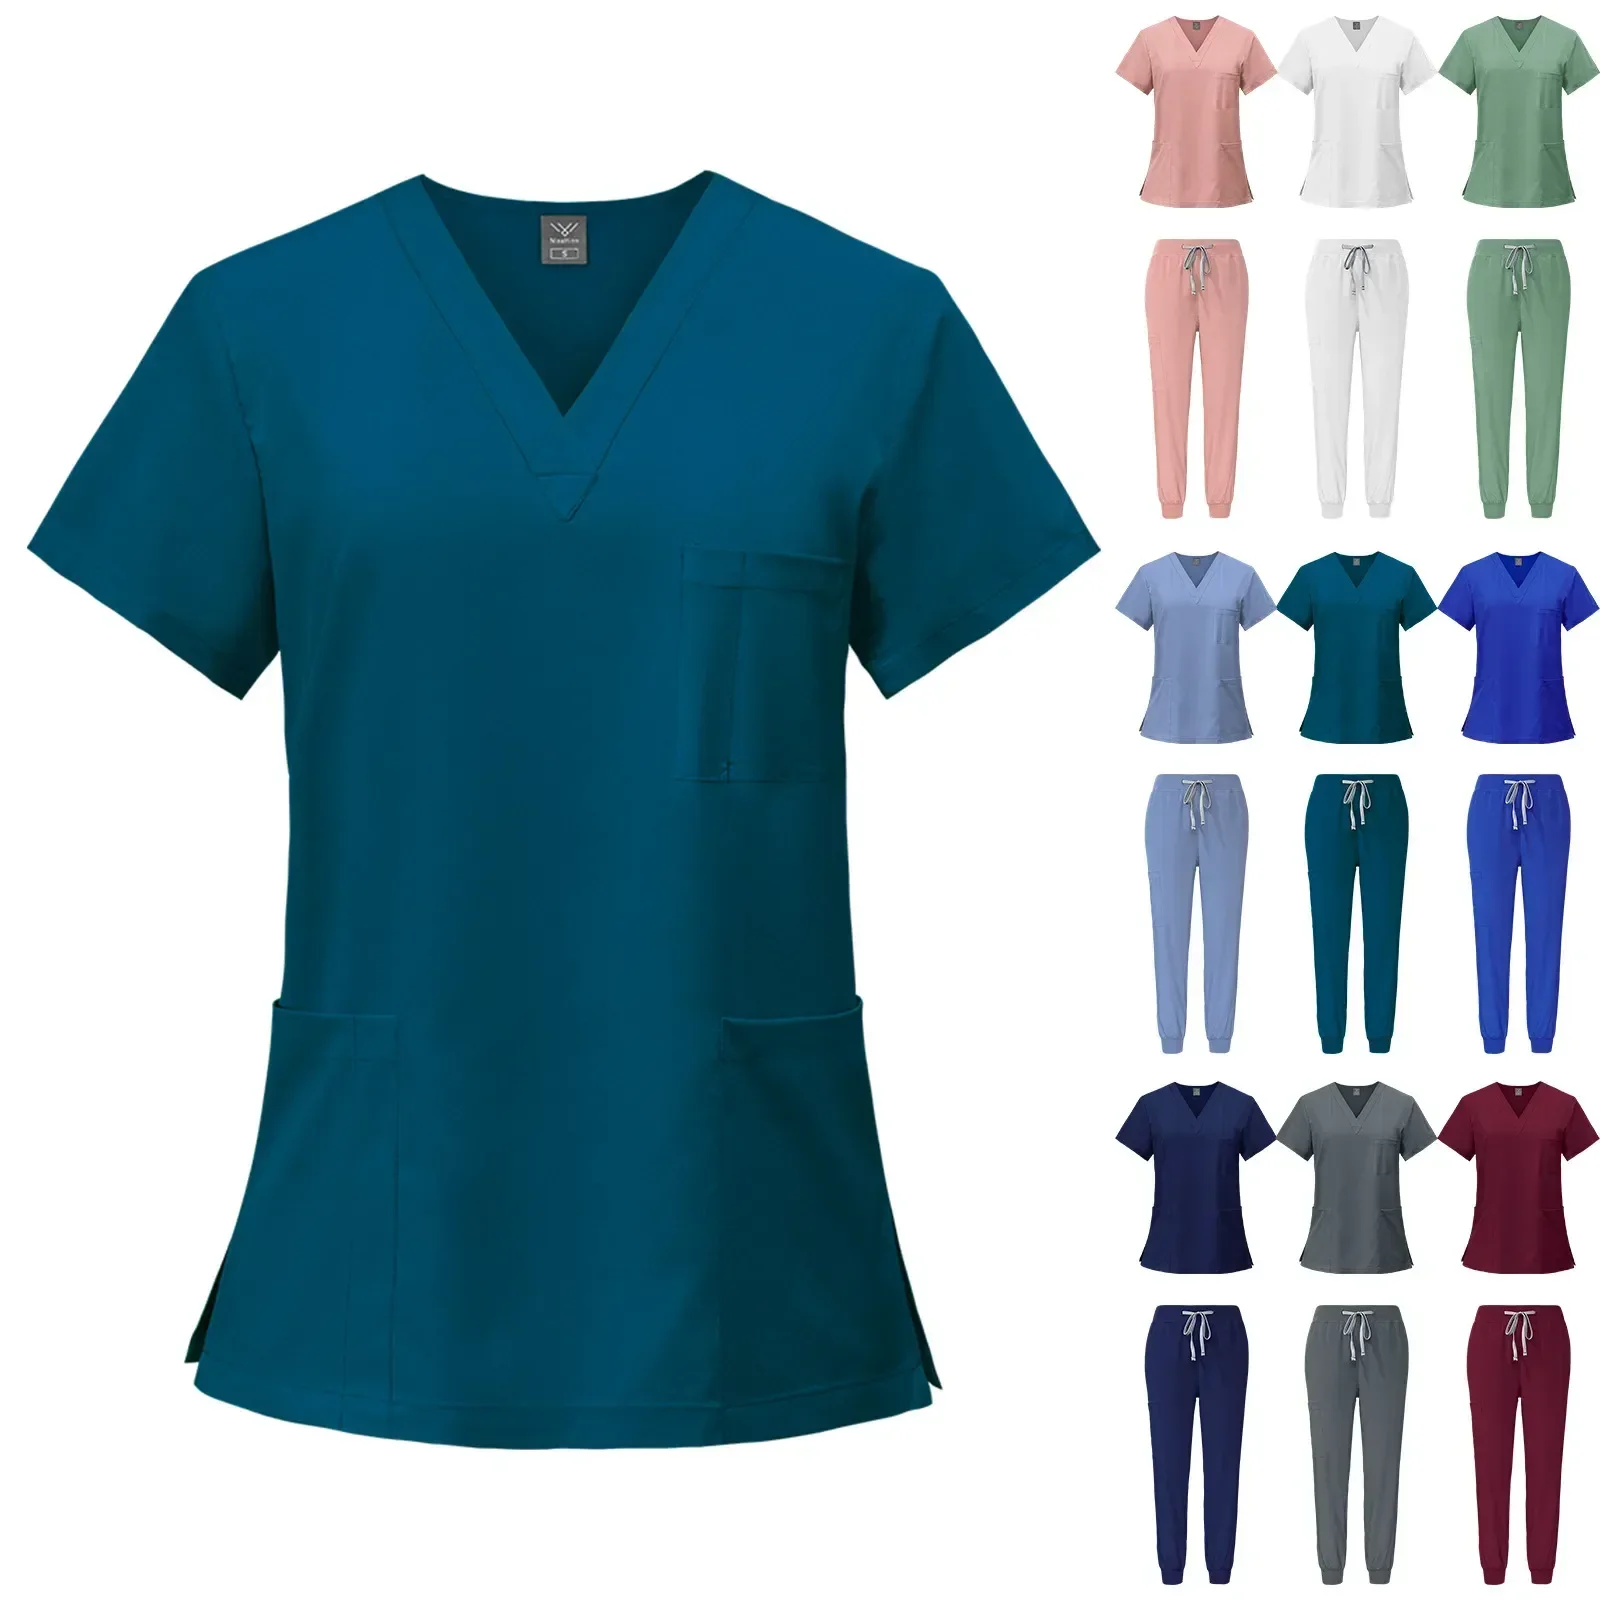 

Многоцветная короткая униформа для полости рта, медицинская Униформа с рукавом для больницы, медсестры, стоматологической хирургии, скрабы, наборы медицинских принадлежностей